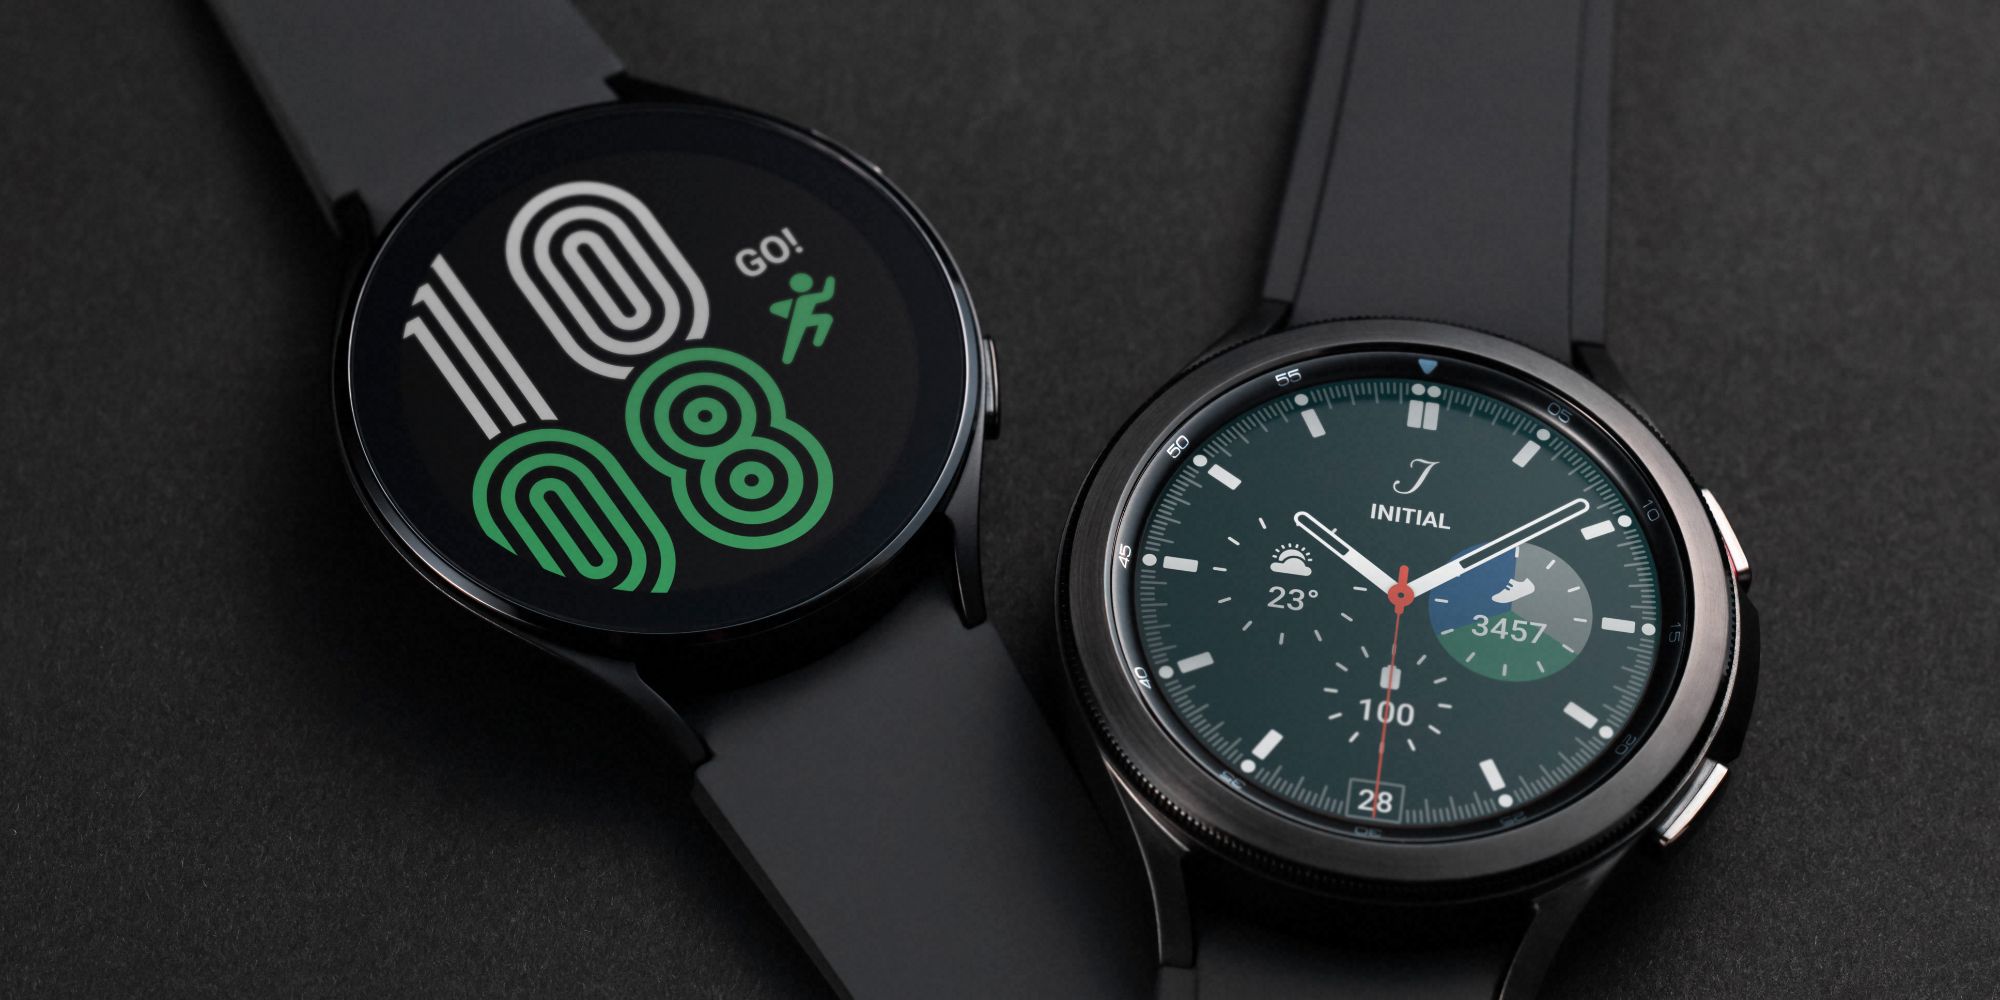 Galaxy Watch 4 debuta con un nuevo sistema operativo, un diseño elegante y un precio inicial de $ 250